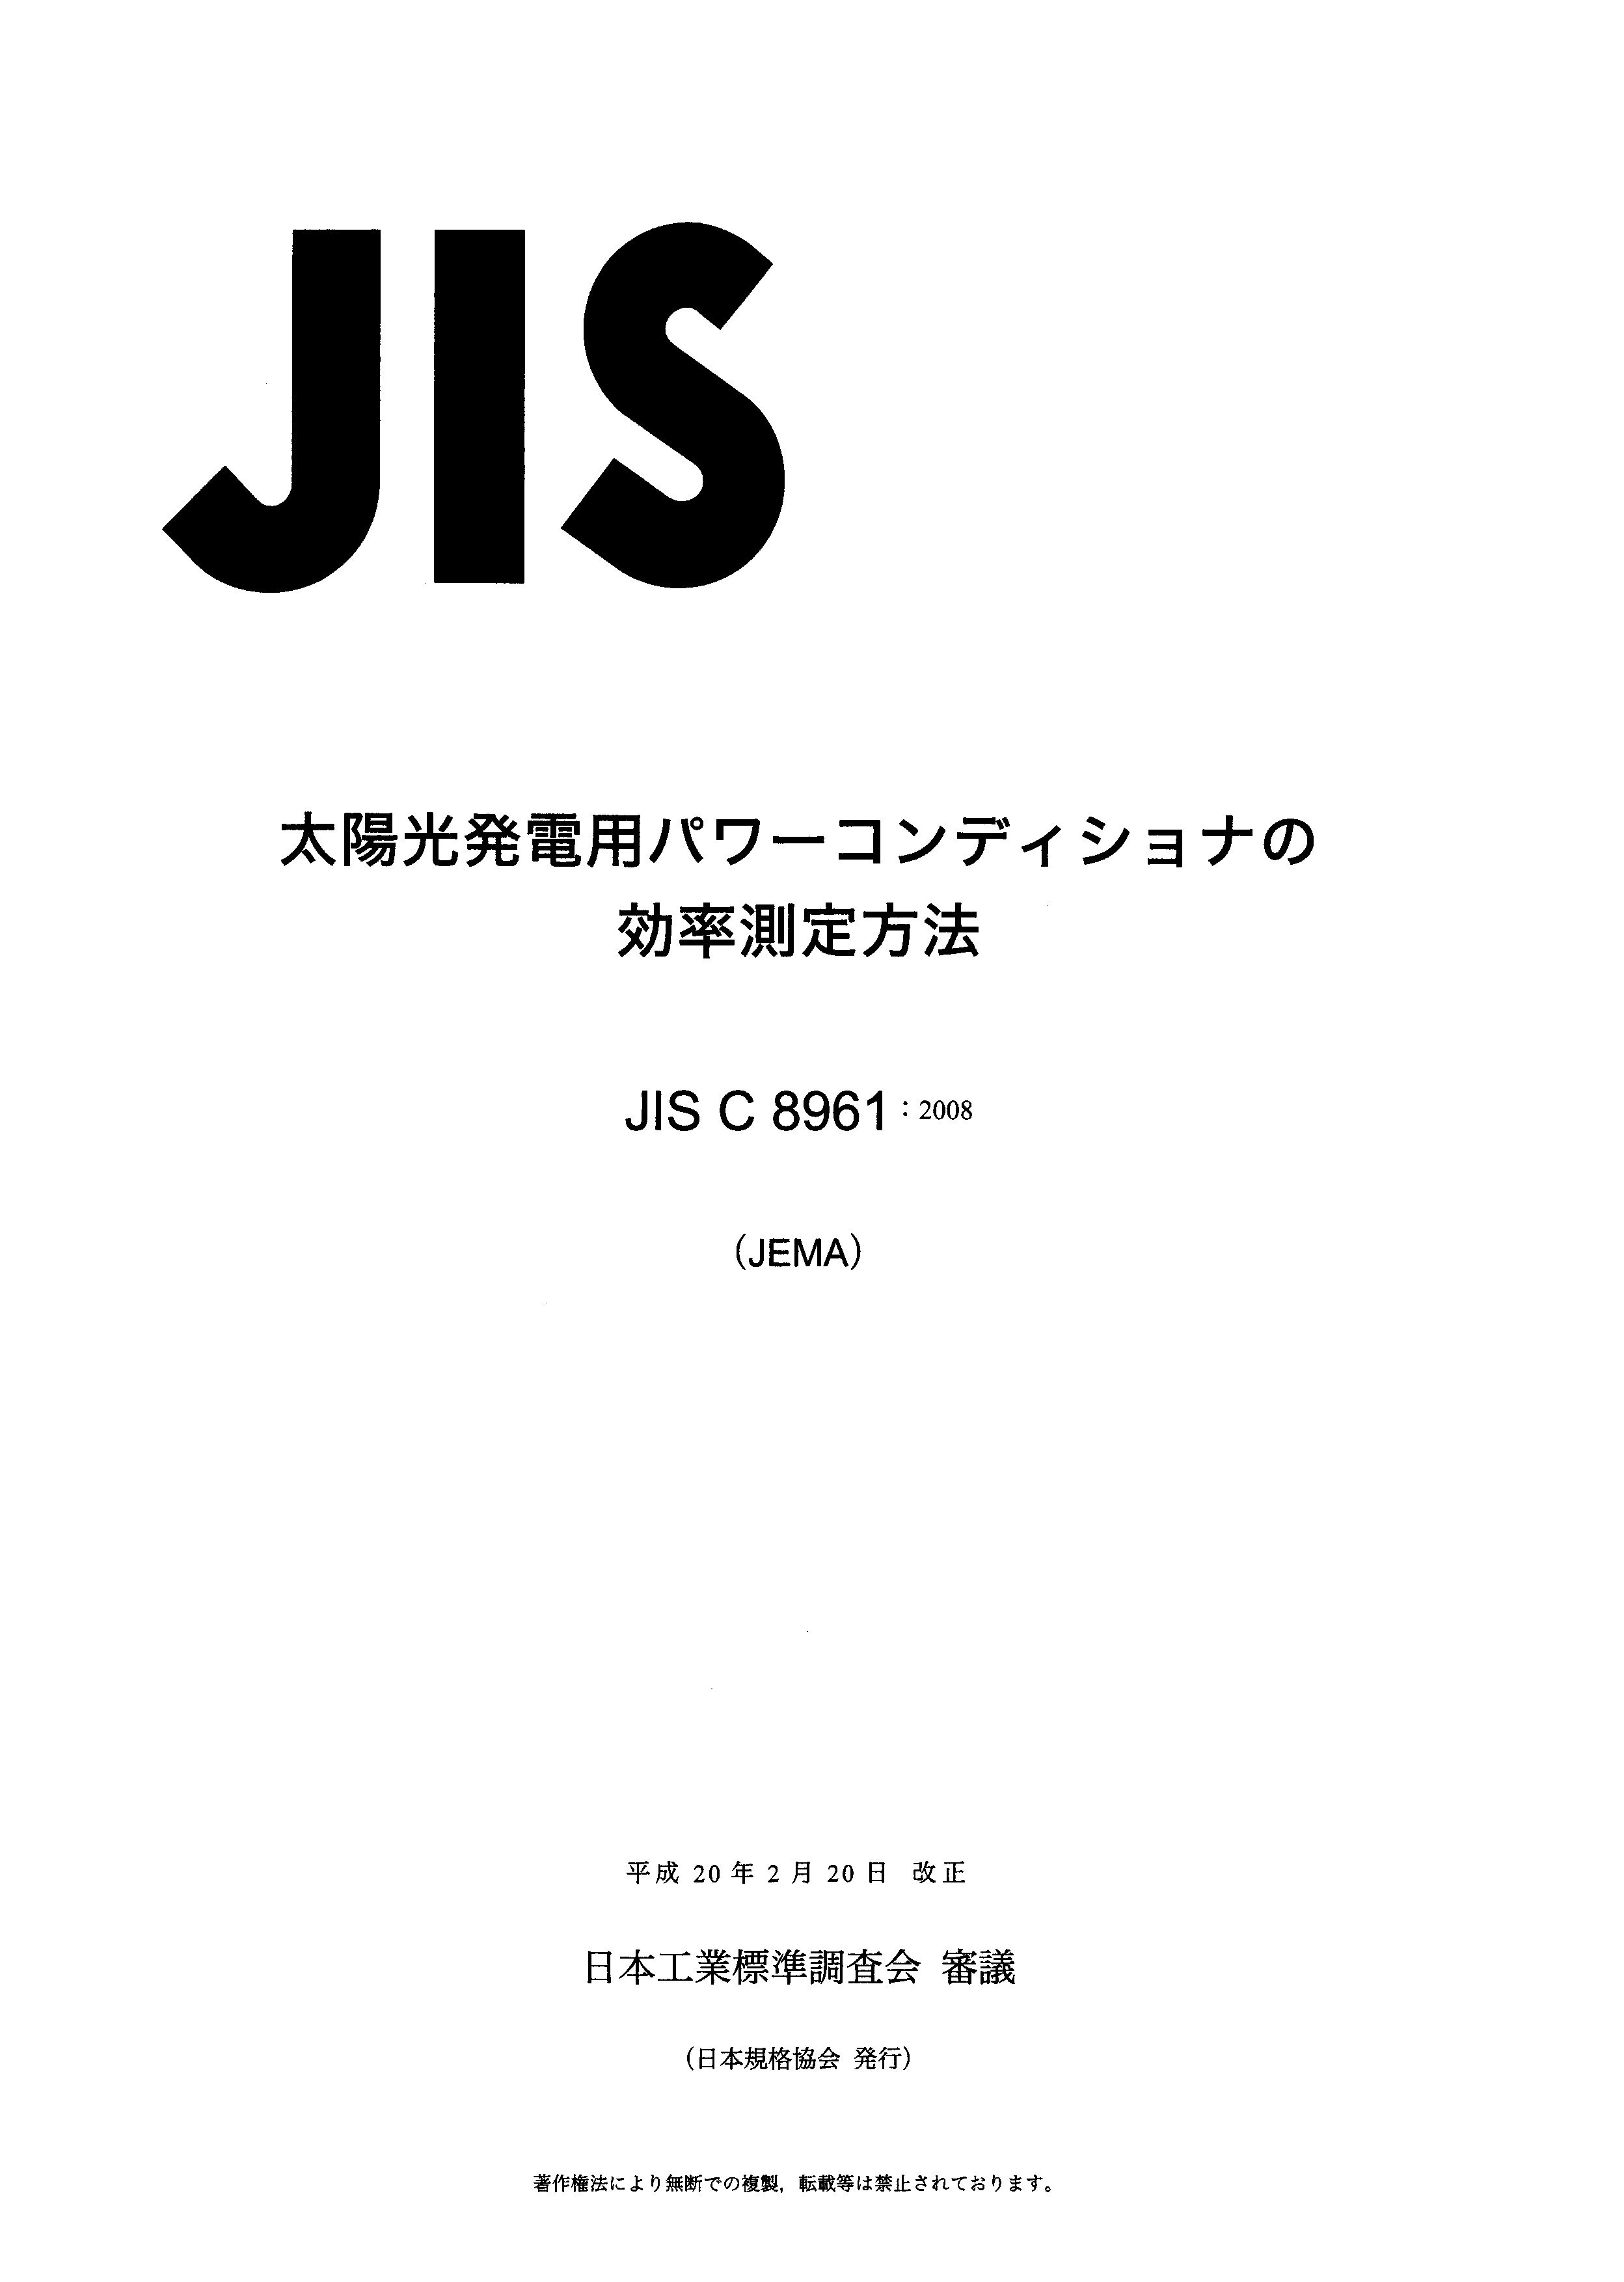 JIS C 8961:2008封面图